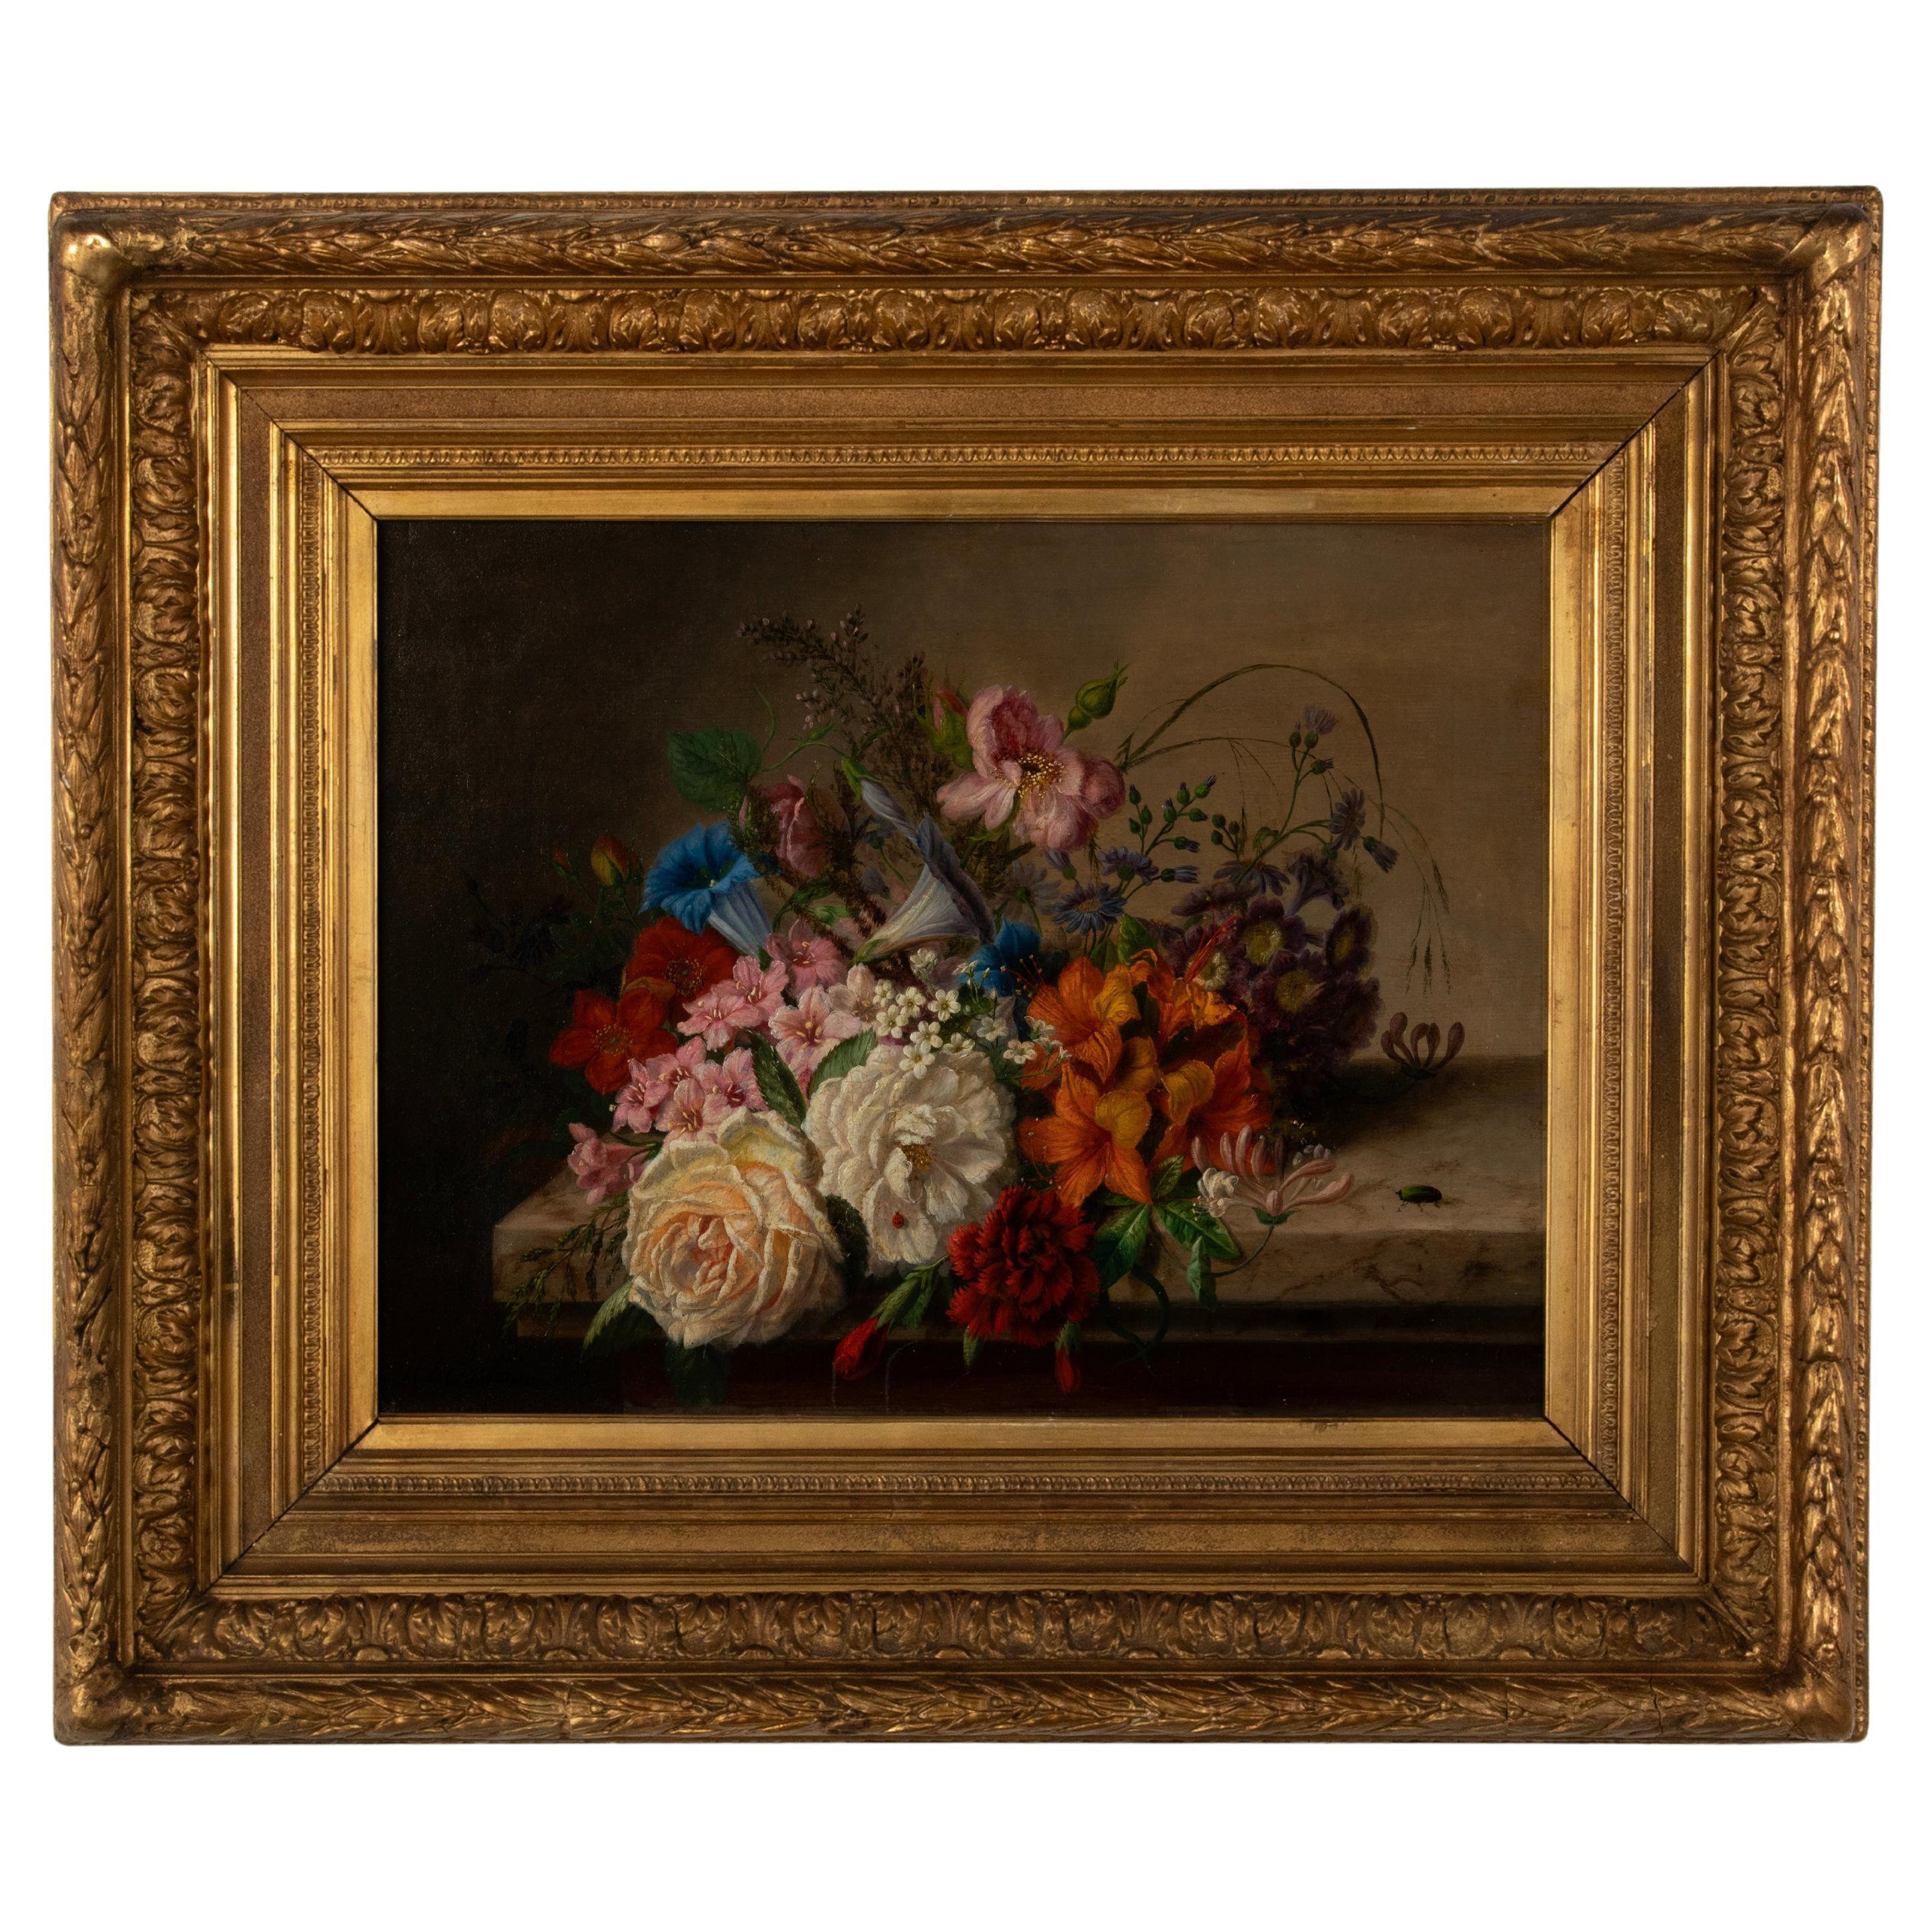 Antique Oil Painting - Renaissance Style Flower Still Life - V. de Sartorius   For Sale